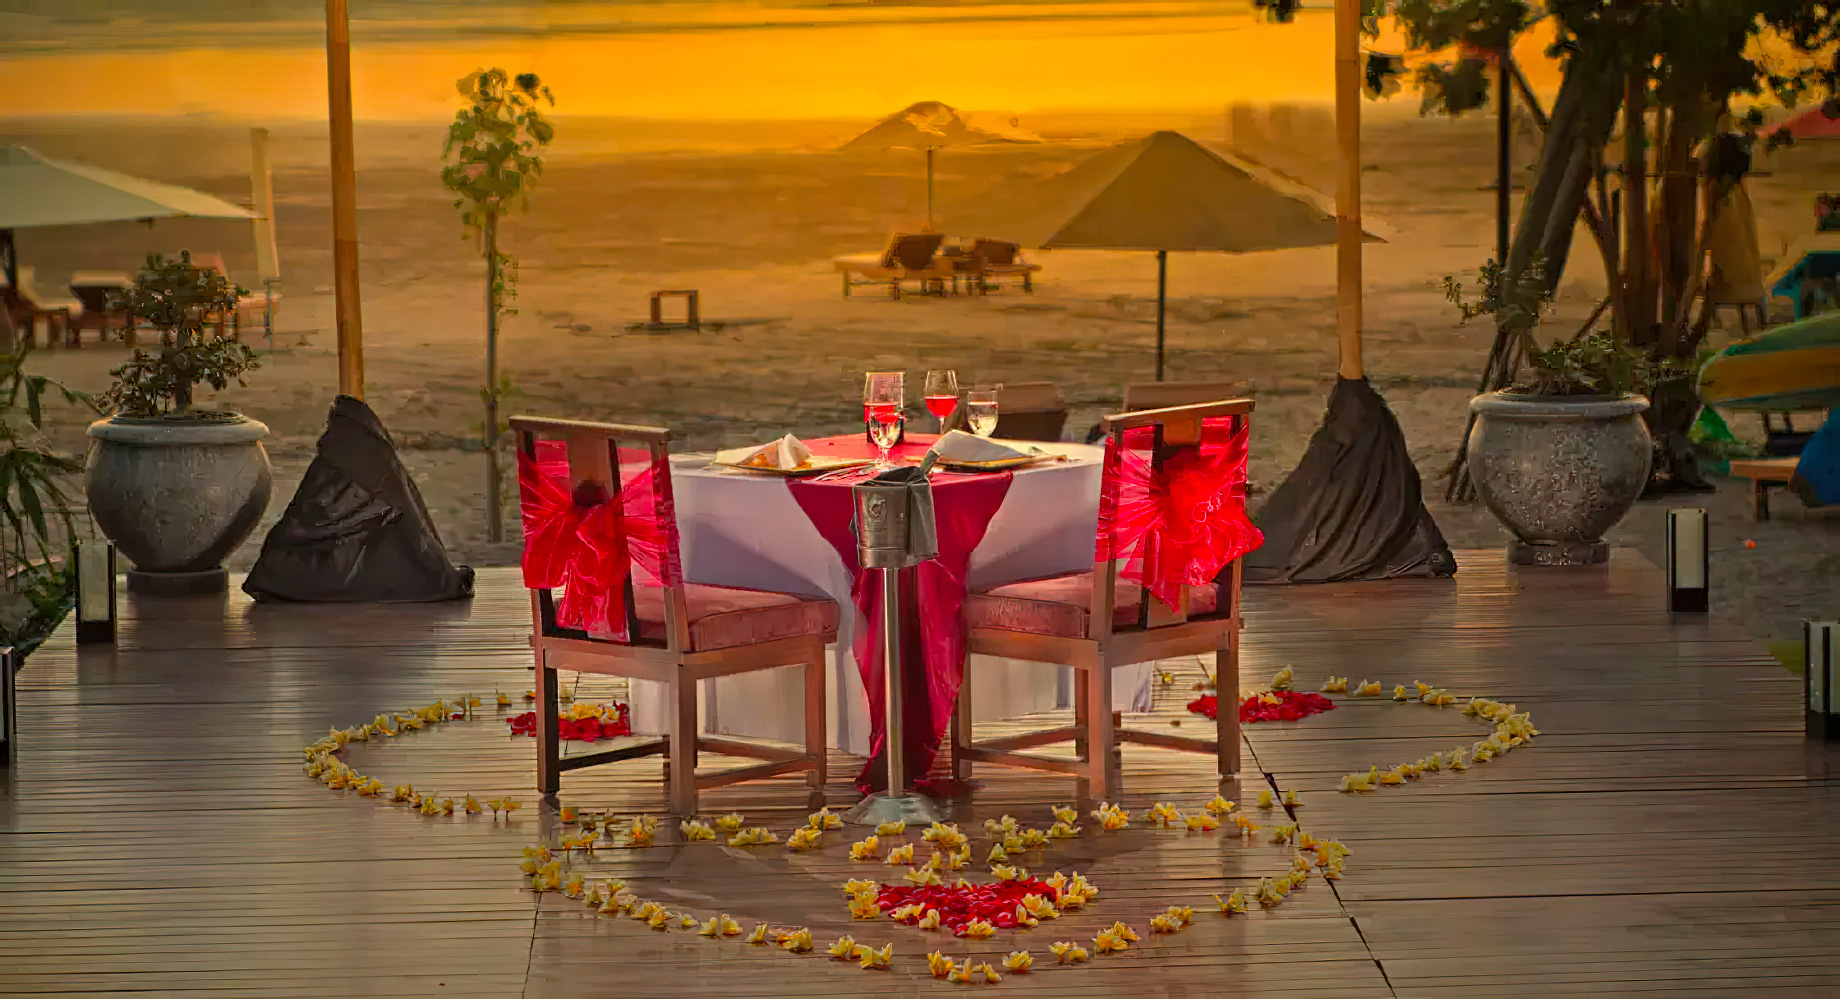 Anantara Seminyak Bali Resort - Bali, Indonesia - Beachfront Private Dining Sunset View